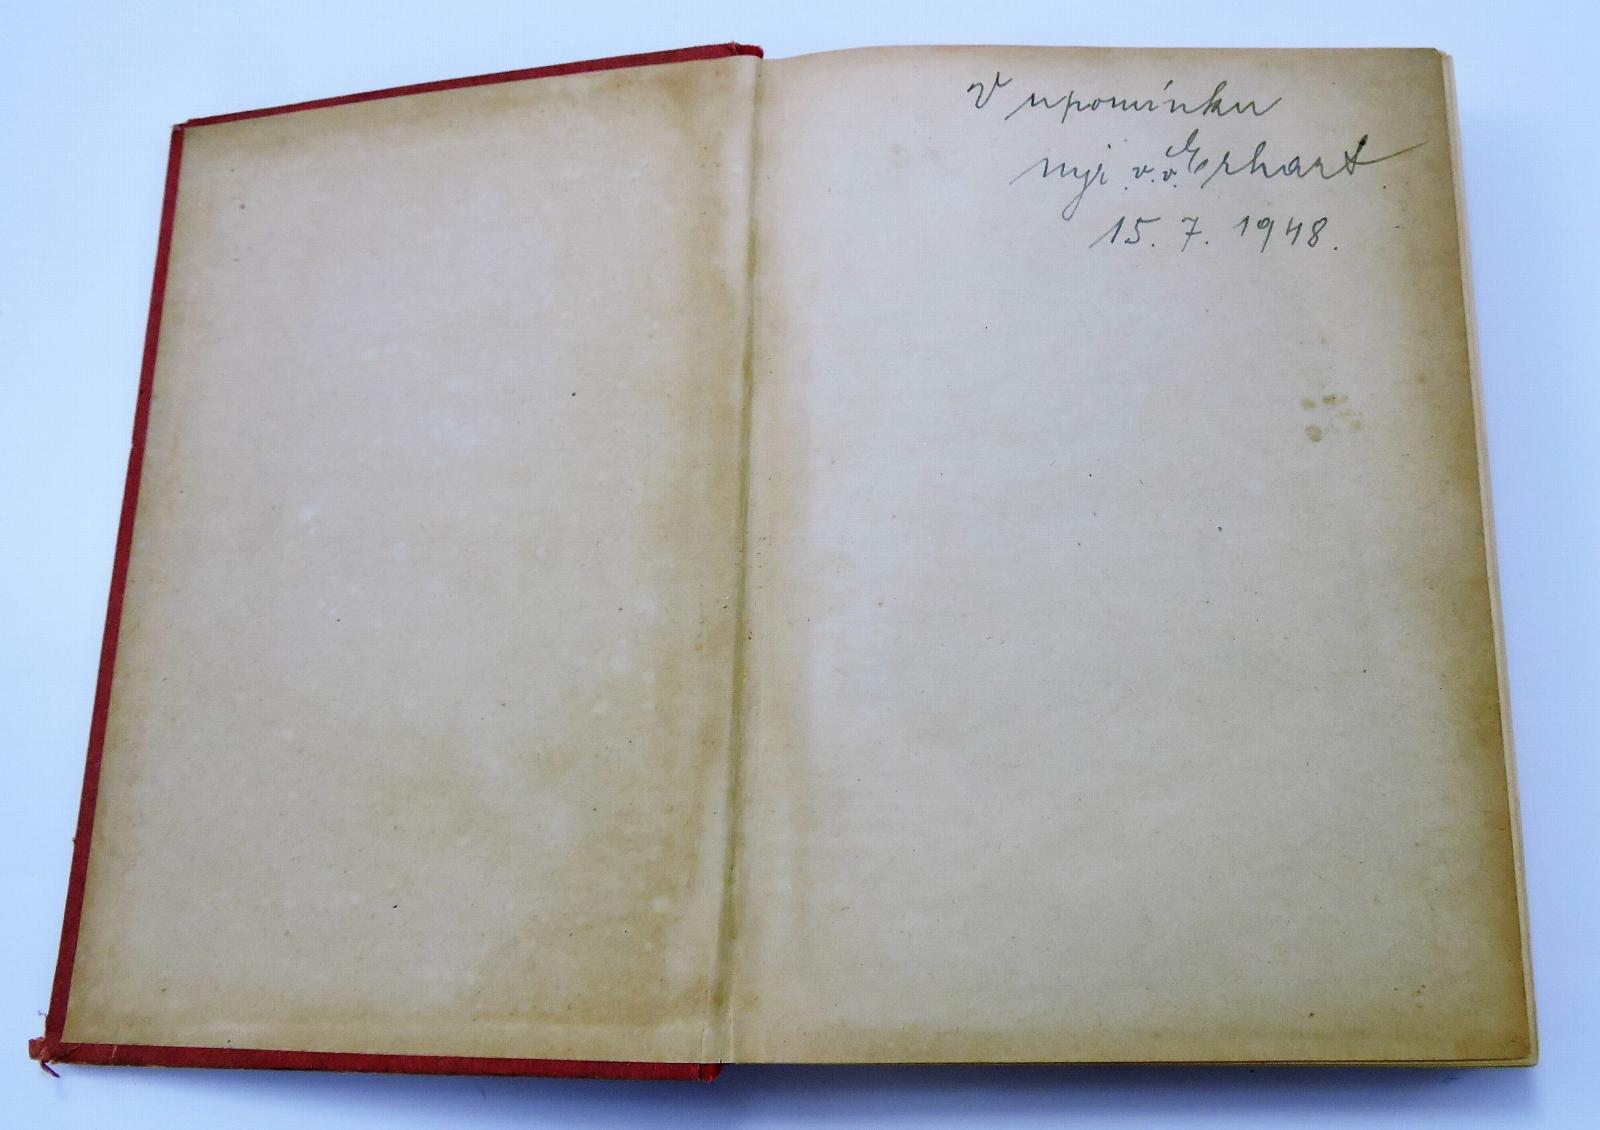 Rukověť četnictva 1937 - Podpis autora Rukověťi - Sběratelství